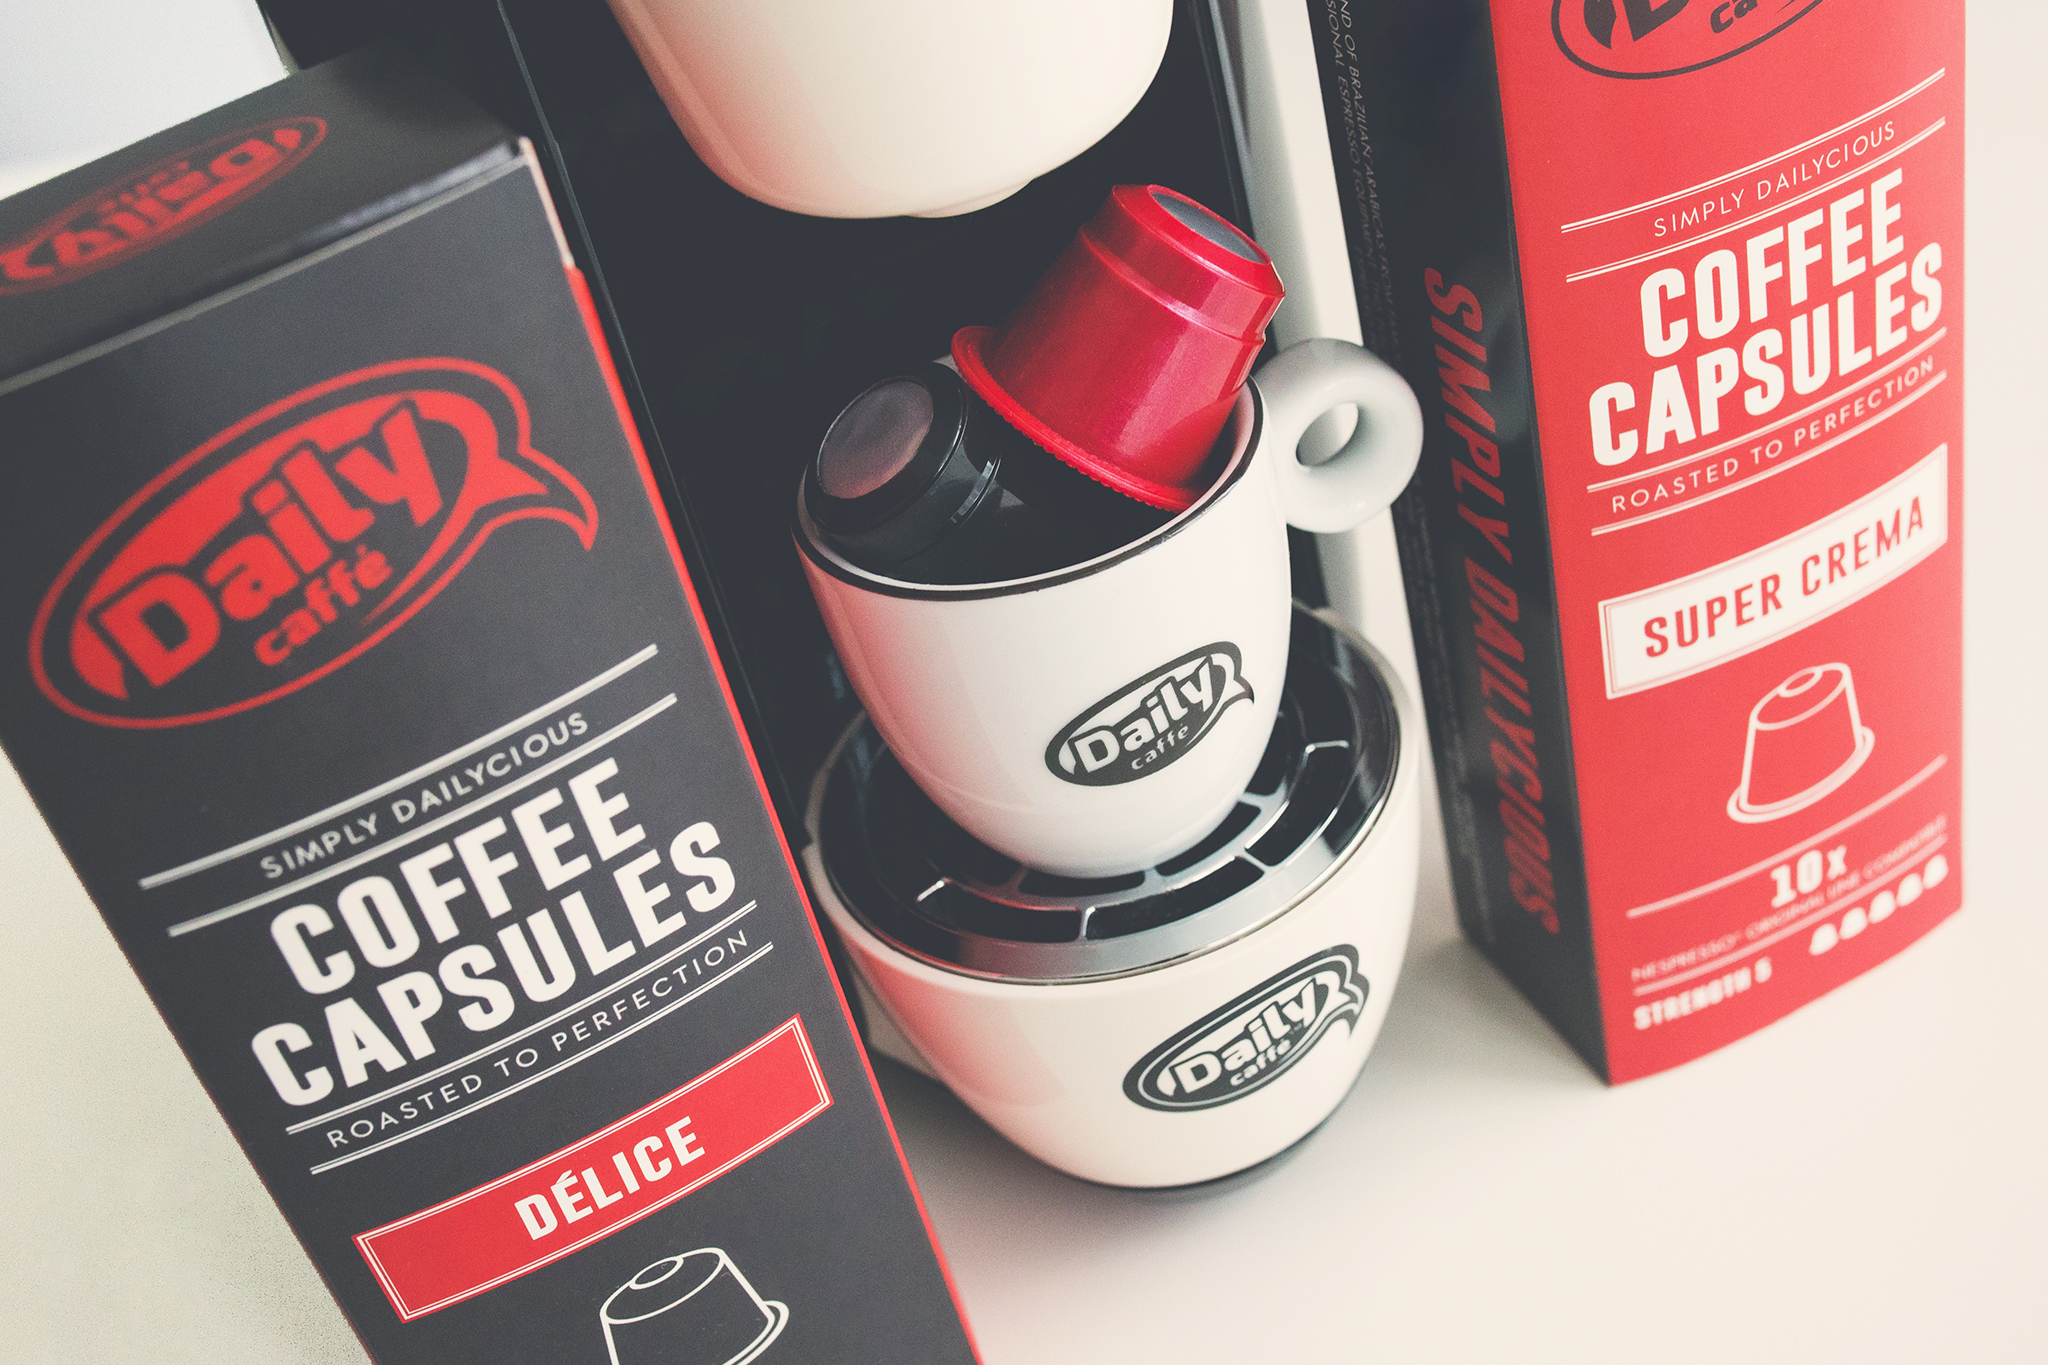 Nespresso Capsules Daily Caffe